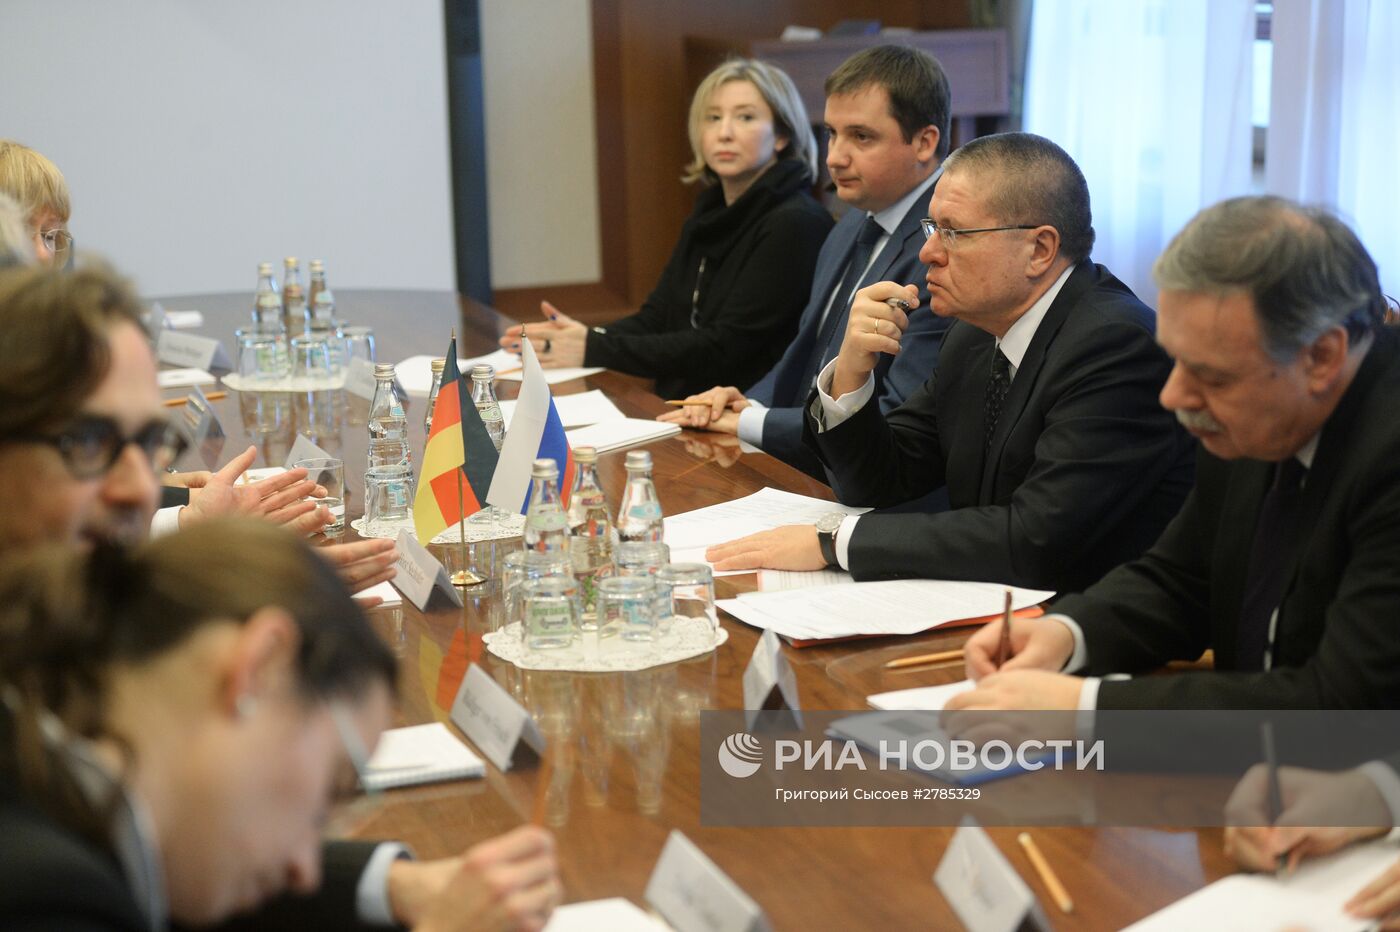 Встреча министра экономического развития РФ А. Улюкаева с премьер-министром Баварии Хорстом Зеехофером